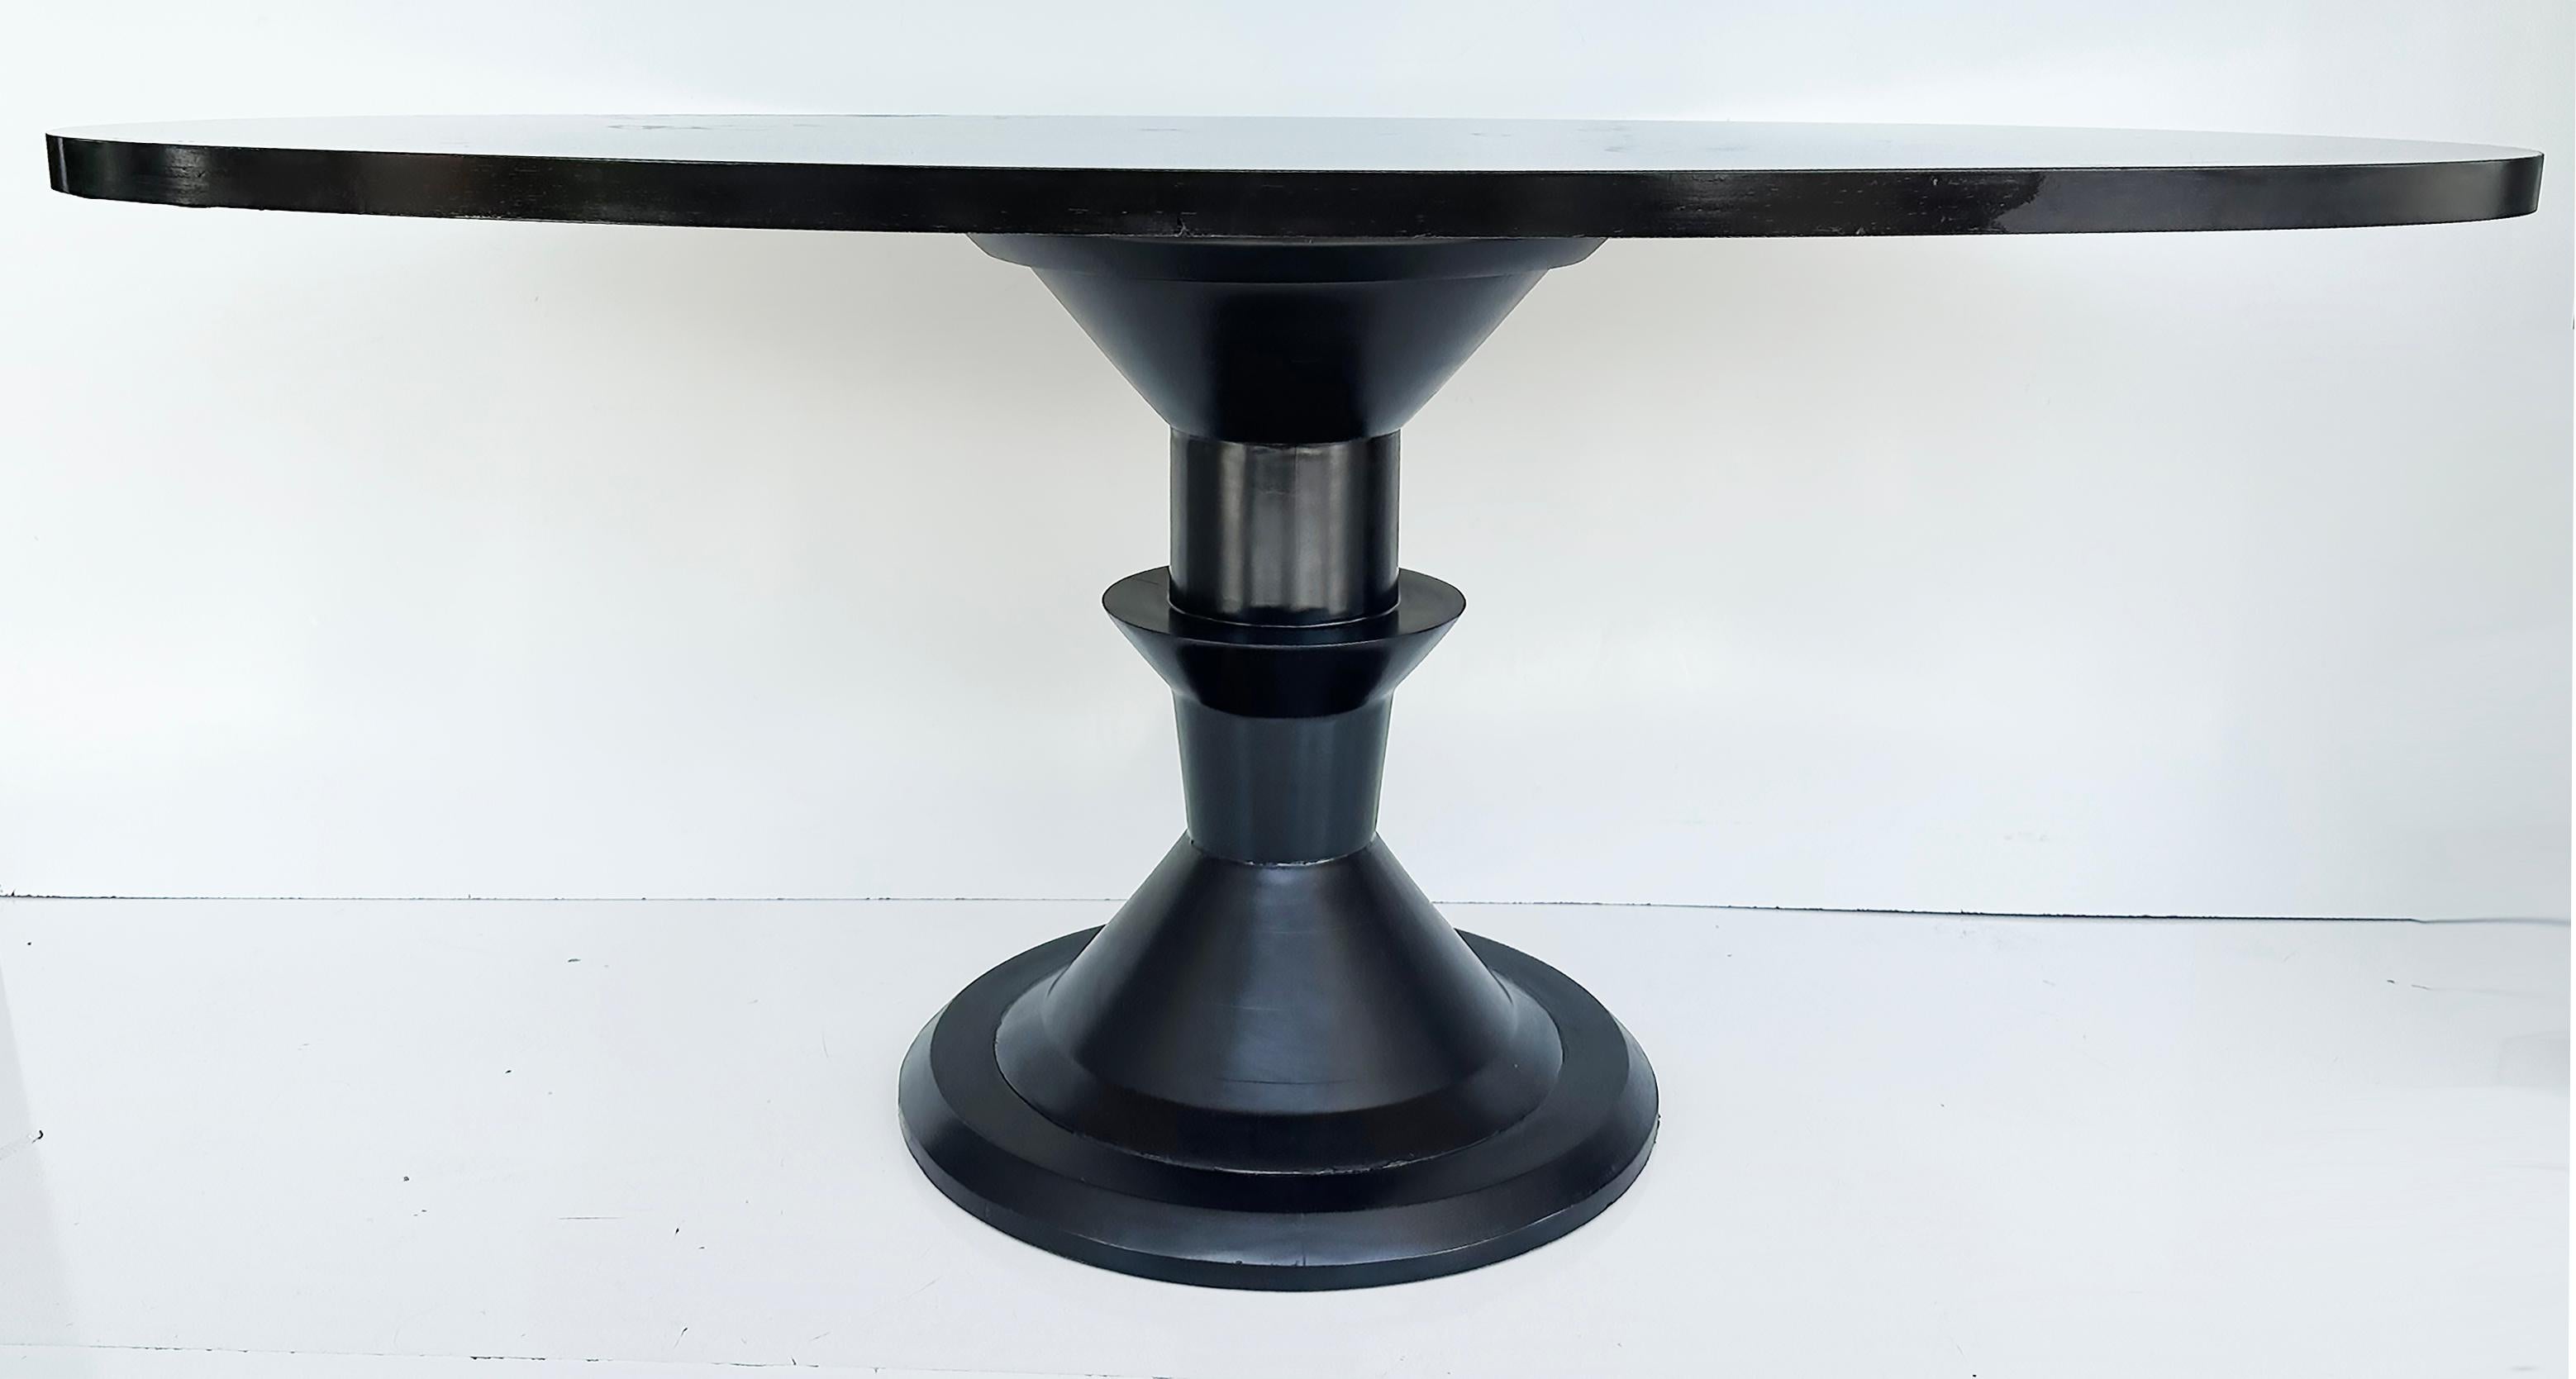 Postmoderner lackierter ovaler Esstisch mit gedrehtem skulpturalem Sockel

Zum Verkauf angeboten wird ein stilvoller postmoderner ovaler Esstisch aus den 1980er Jahren mit einem gedrechselten Holzfuß. Der obere Teil ist ein längliches Oval, das lang